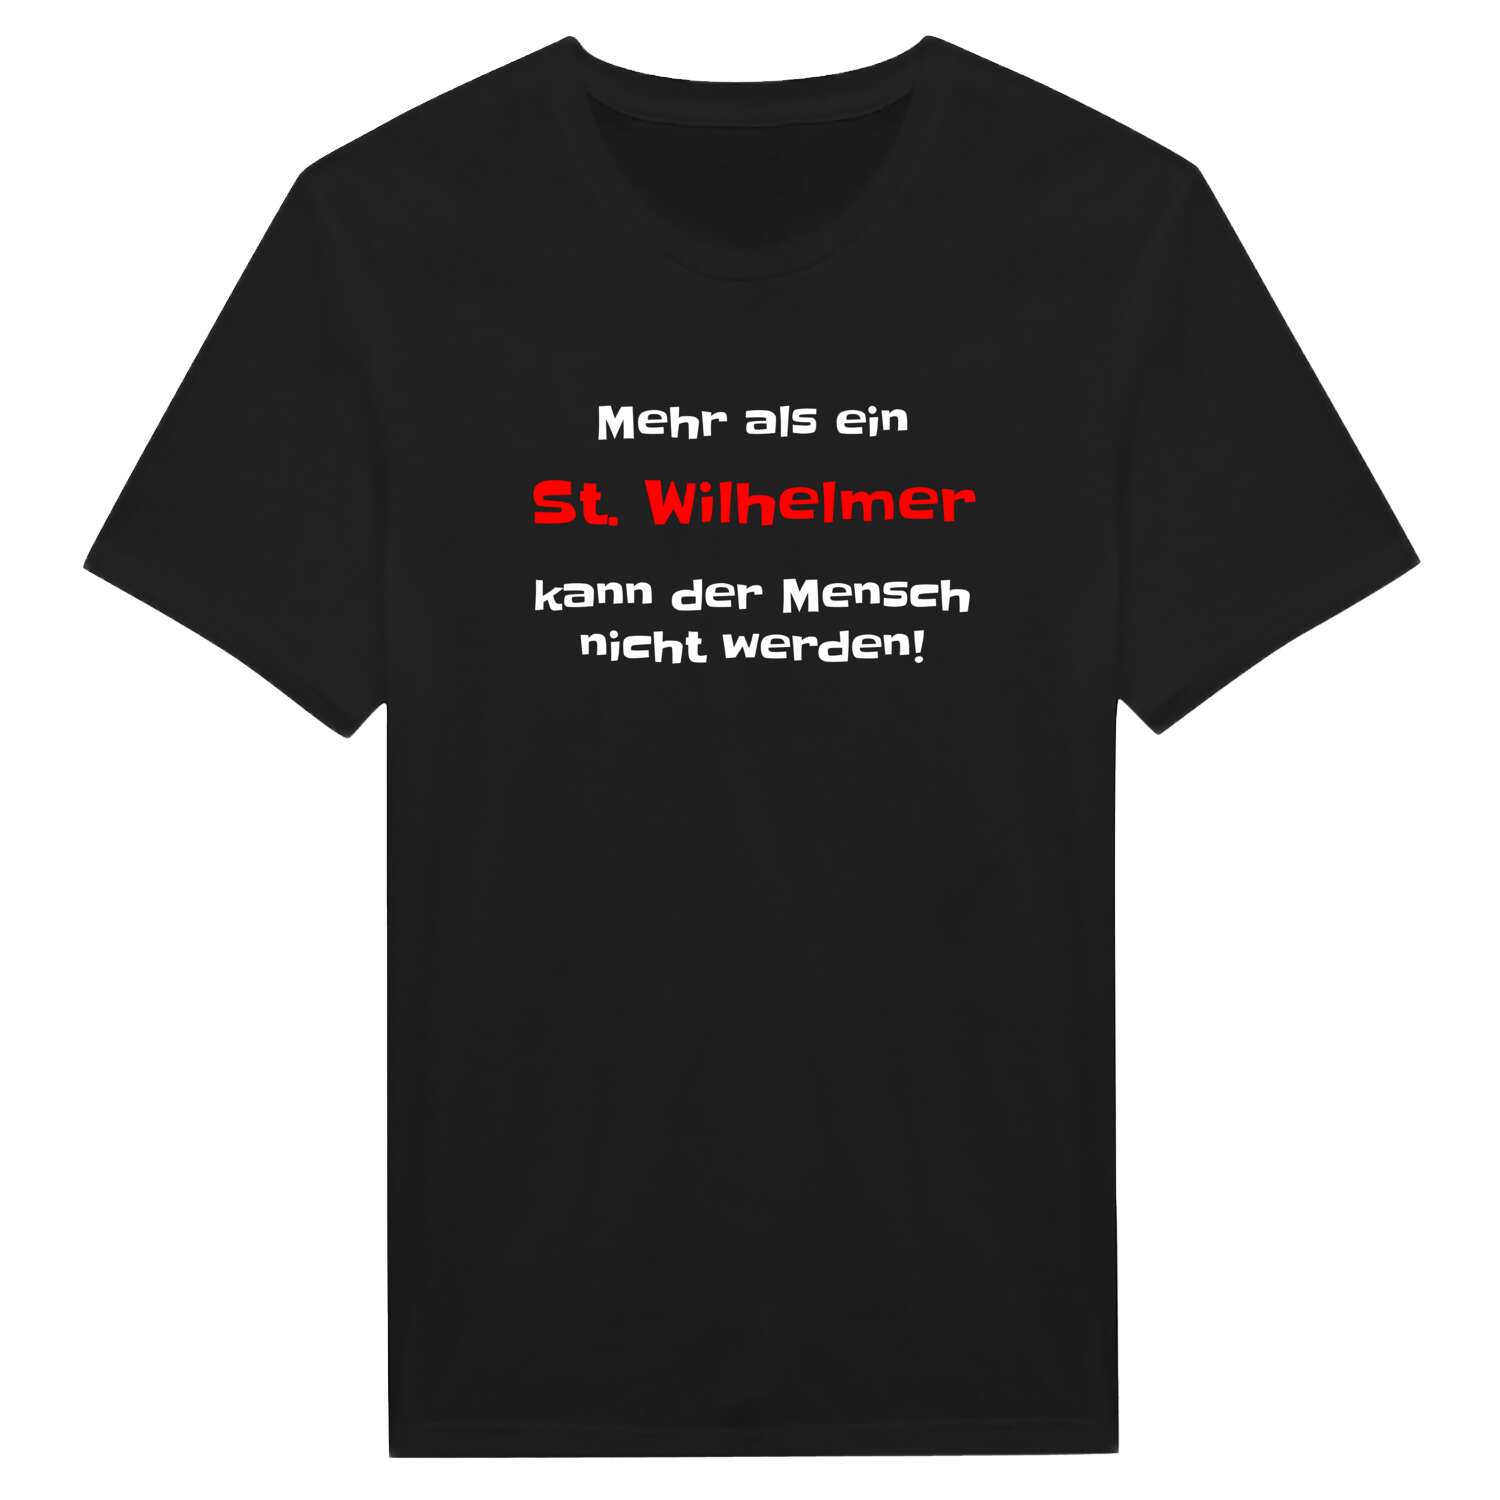 St. Wilhelm T-Shirt »Mehr als ein«